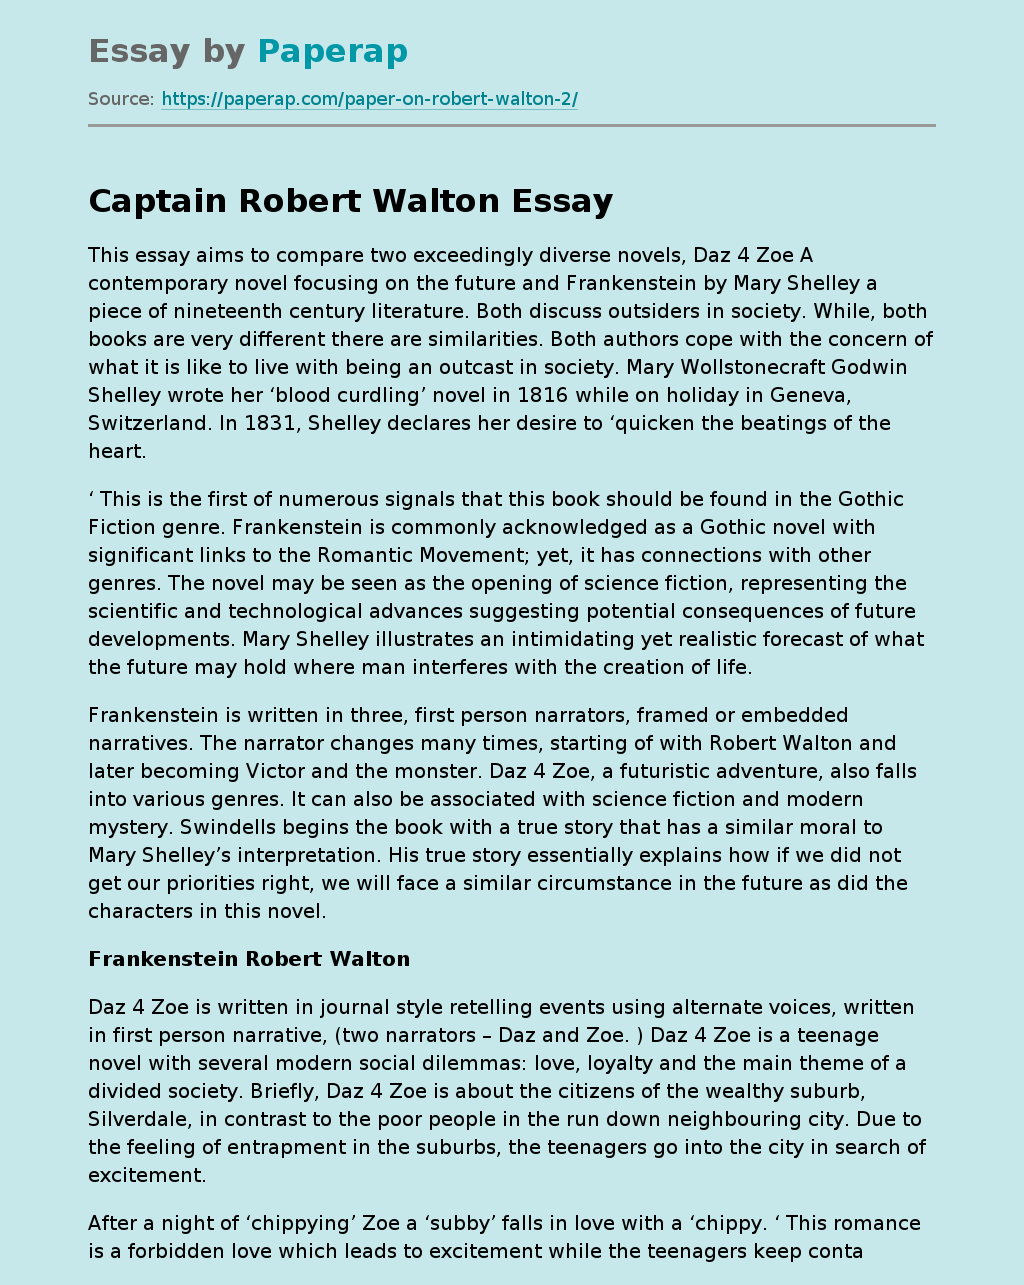 Captain Robert Walton